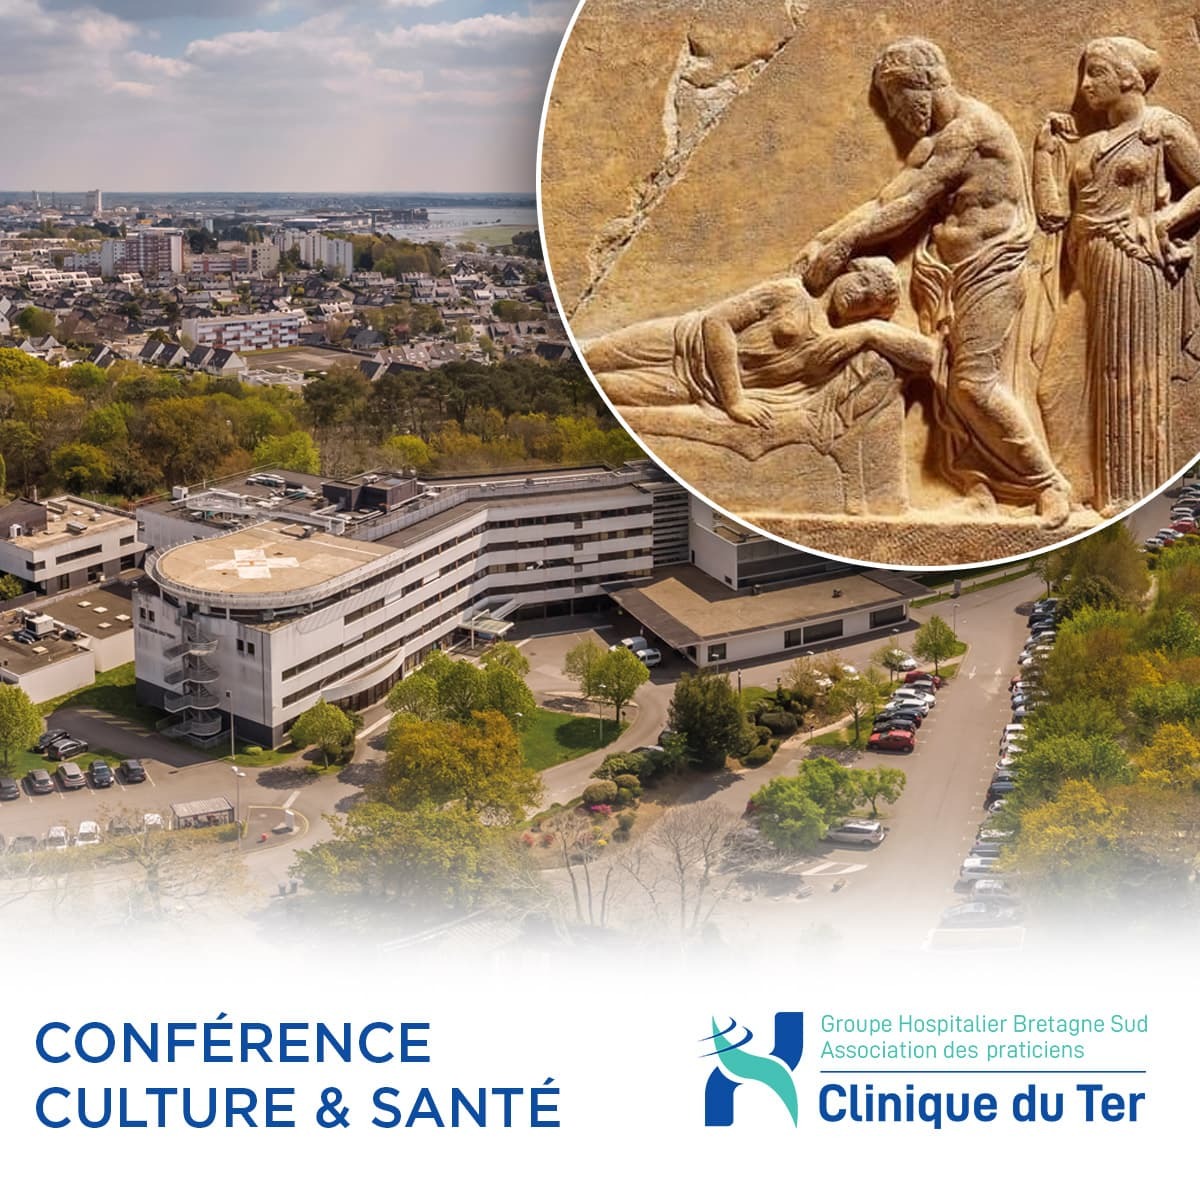 Conférence culture & santé : Le parcours de soins en Grèce ancienne